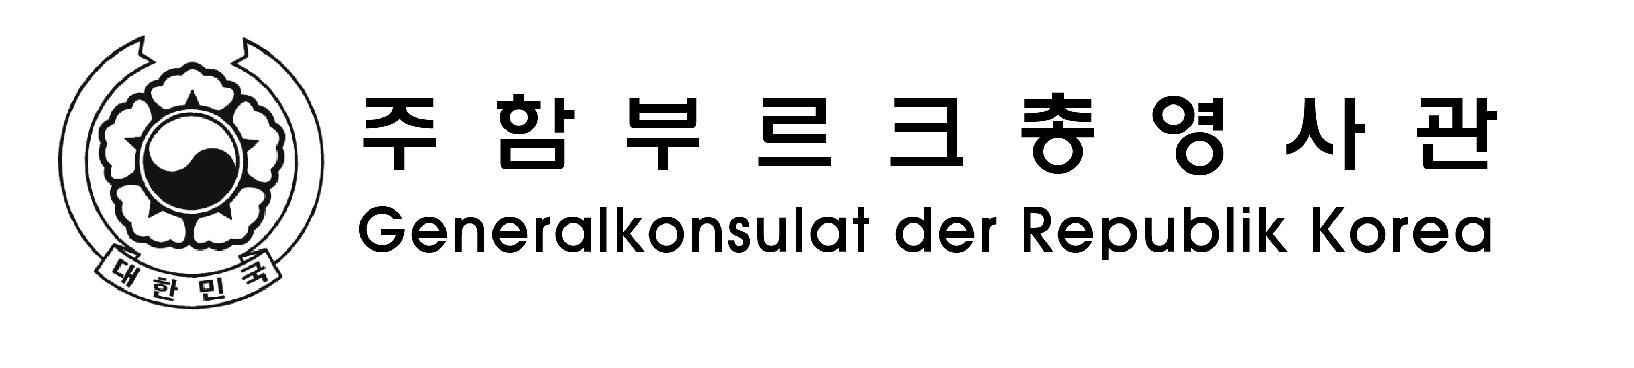 Generalkonsulat der Republik Korea in Hamburg